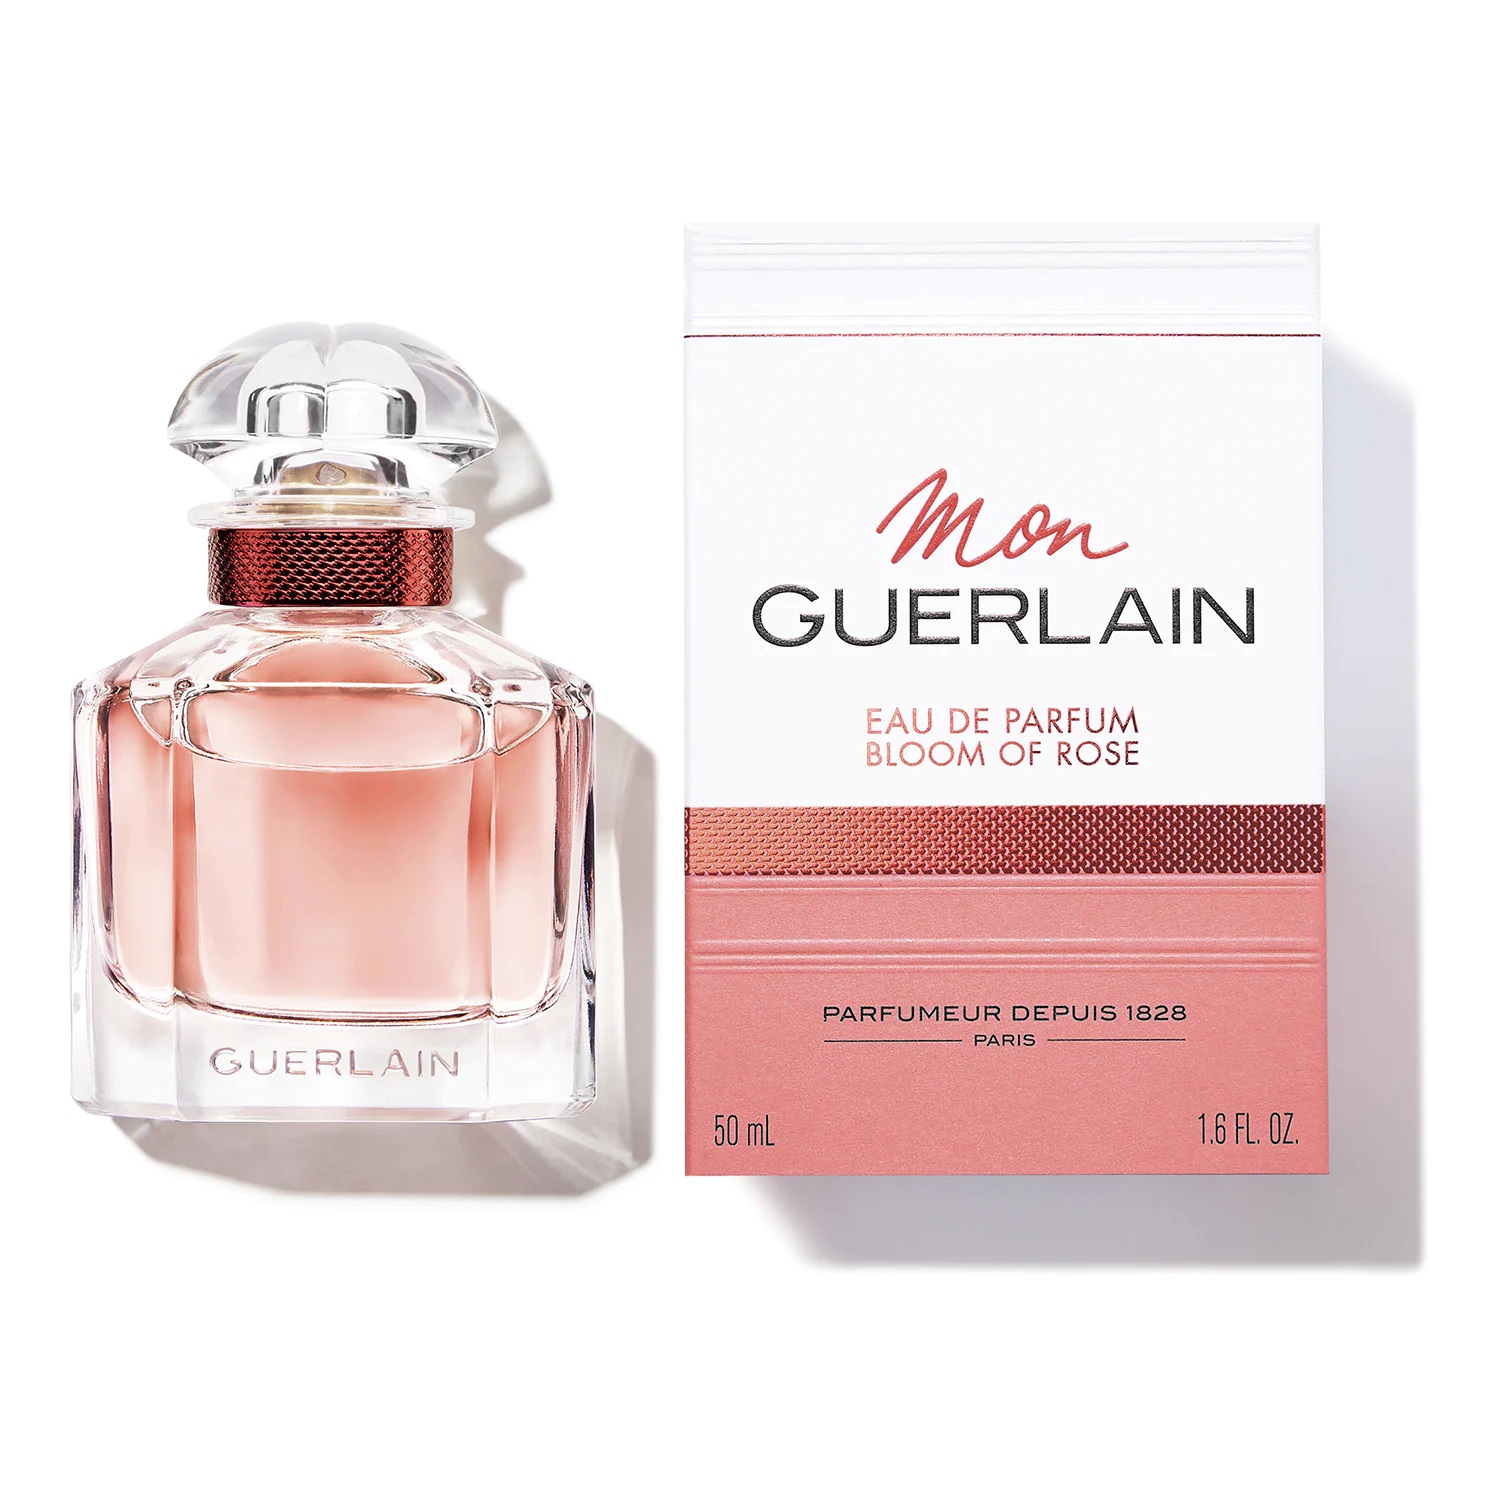 Mon de of parfum Guerlain Bloom Rose - Scentists her eau Guerlain